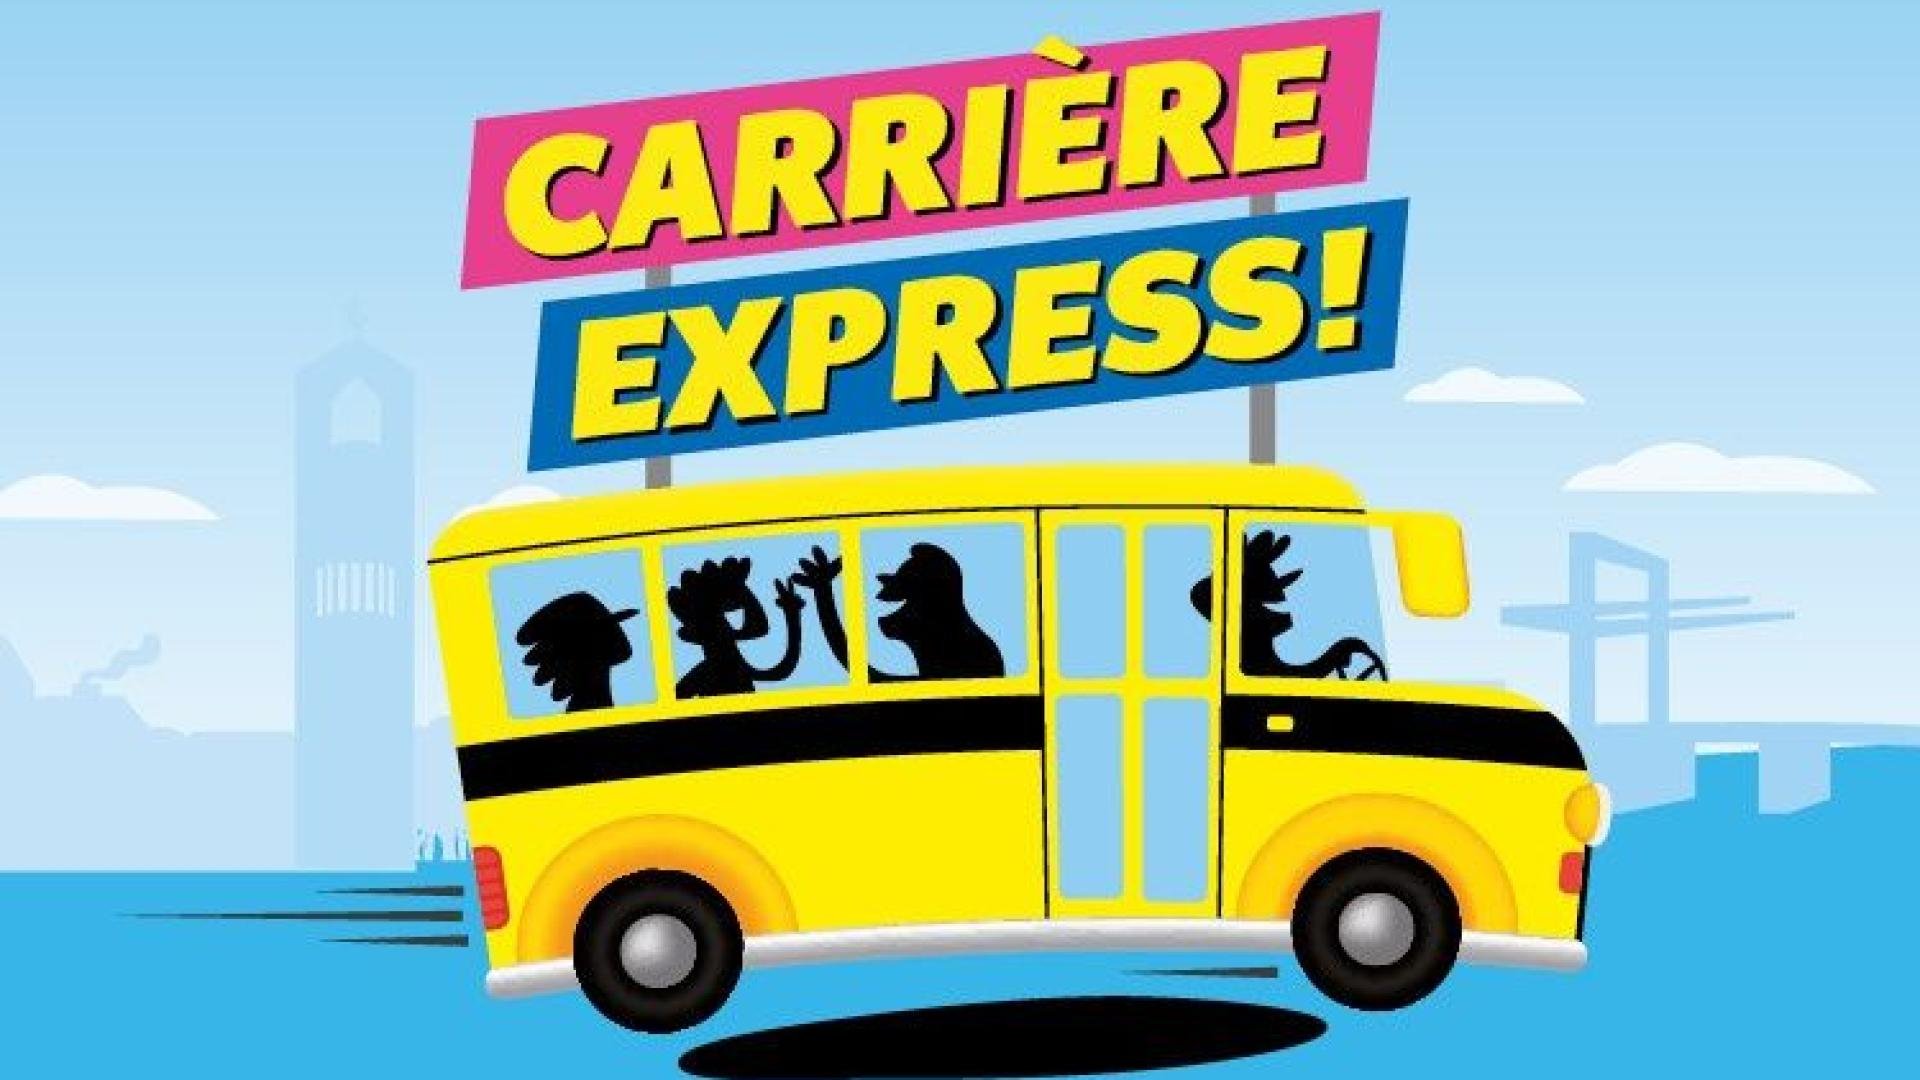 Illustratie van Carrière express bus.